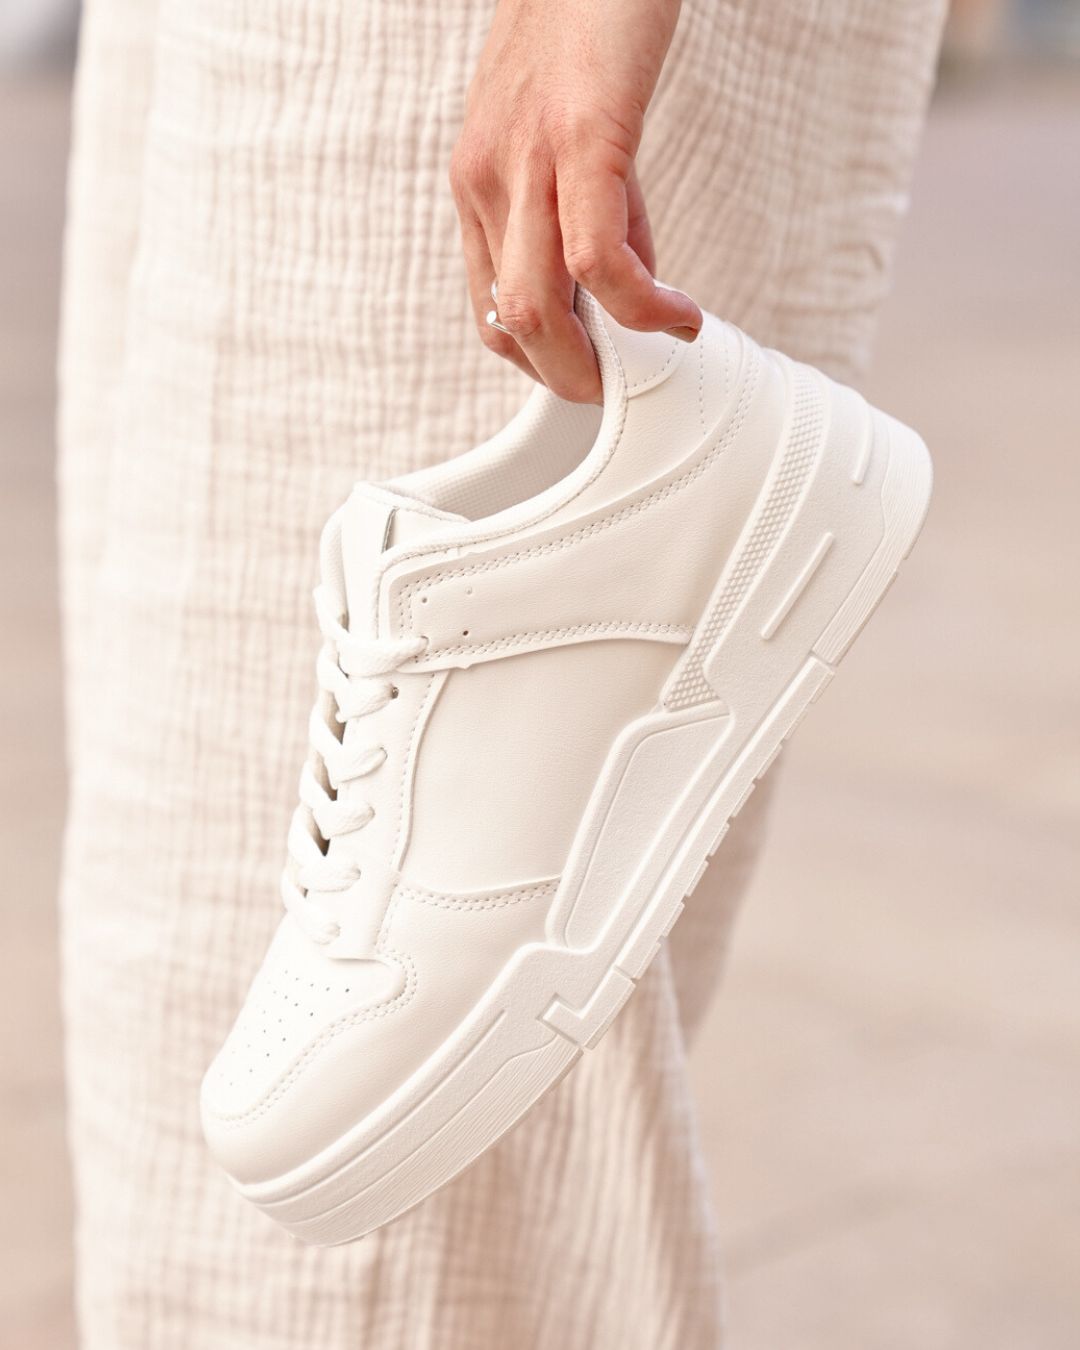 Sneaker für Damen in Weiß mit Schnürsenkeln - Tina - Casualmode.de